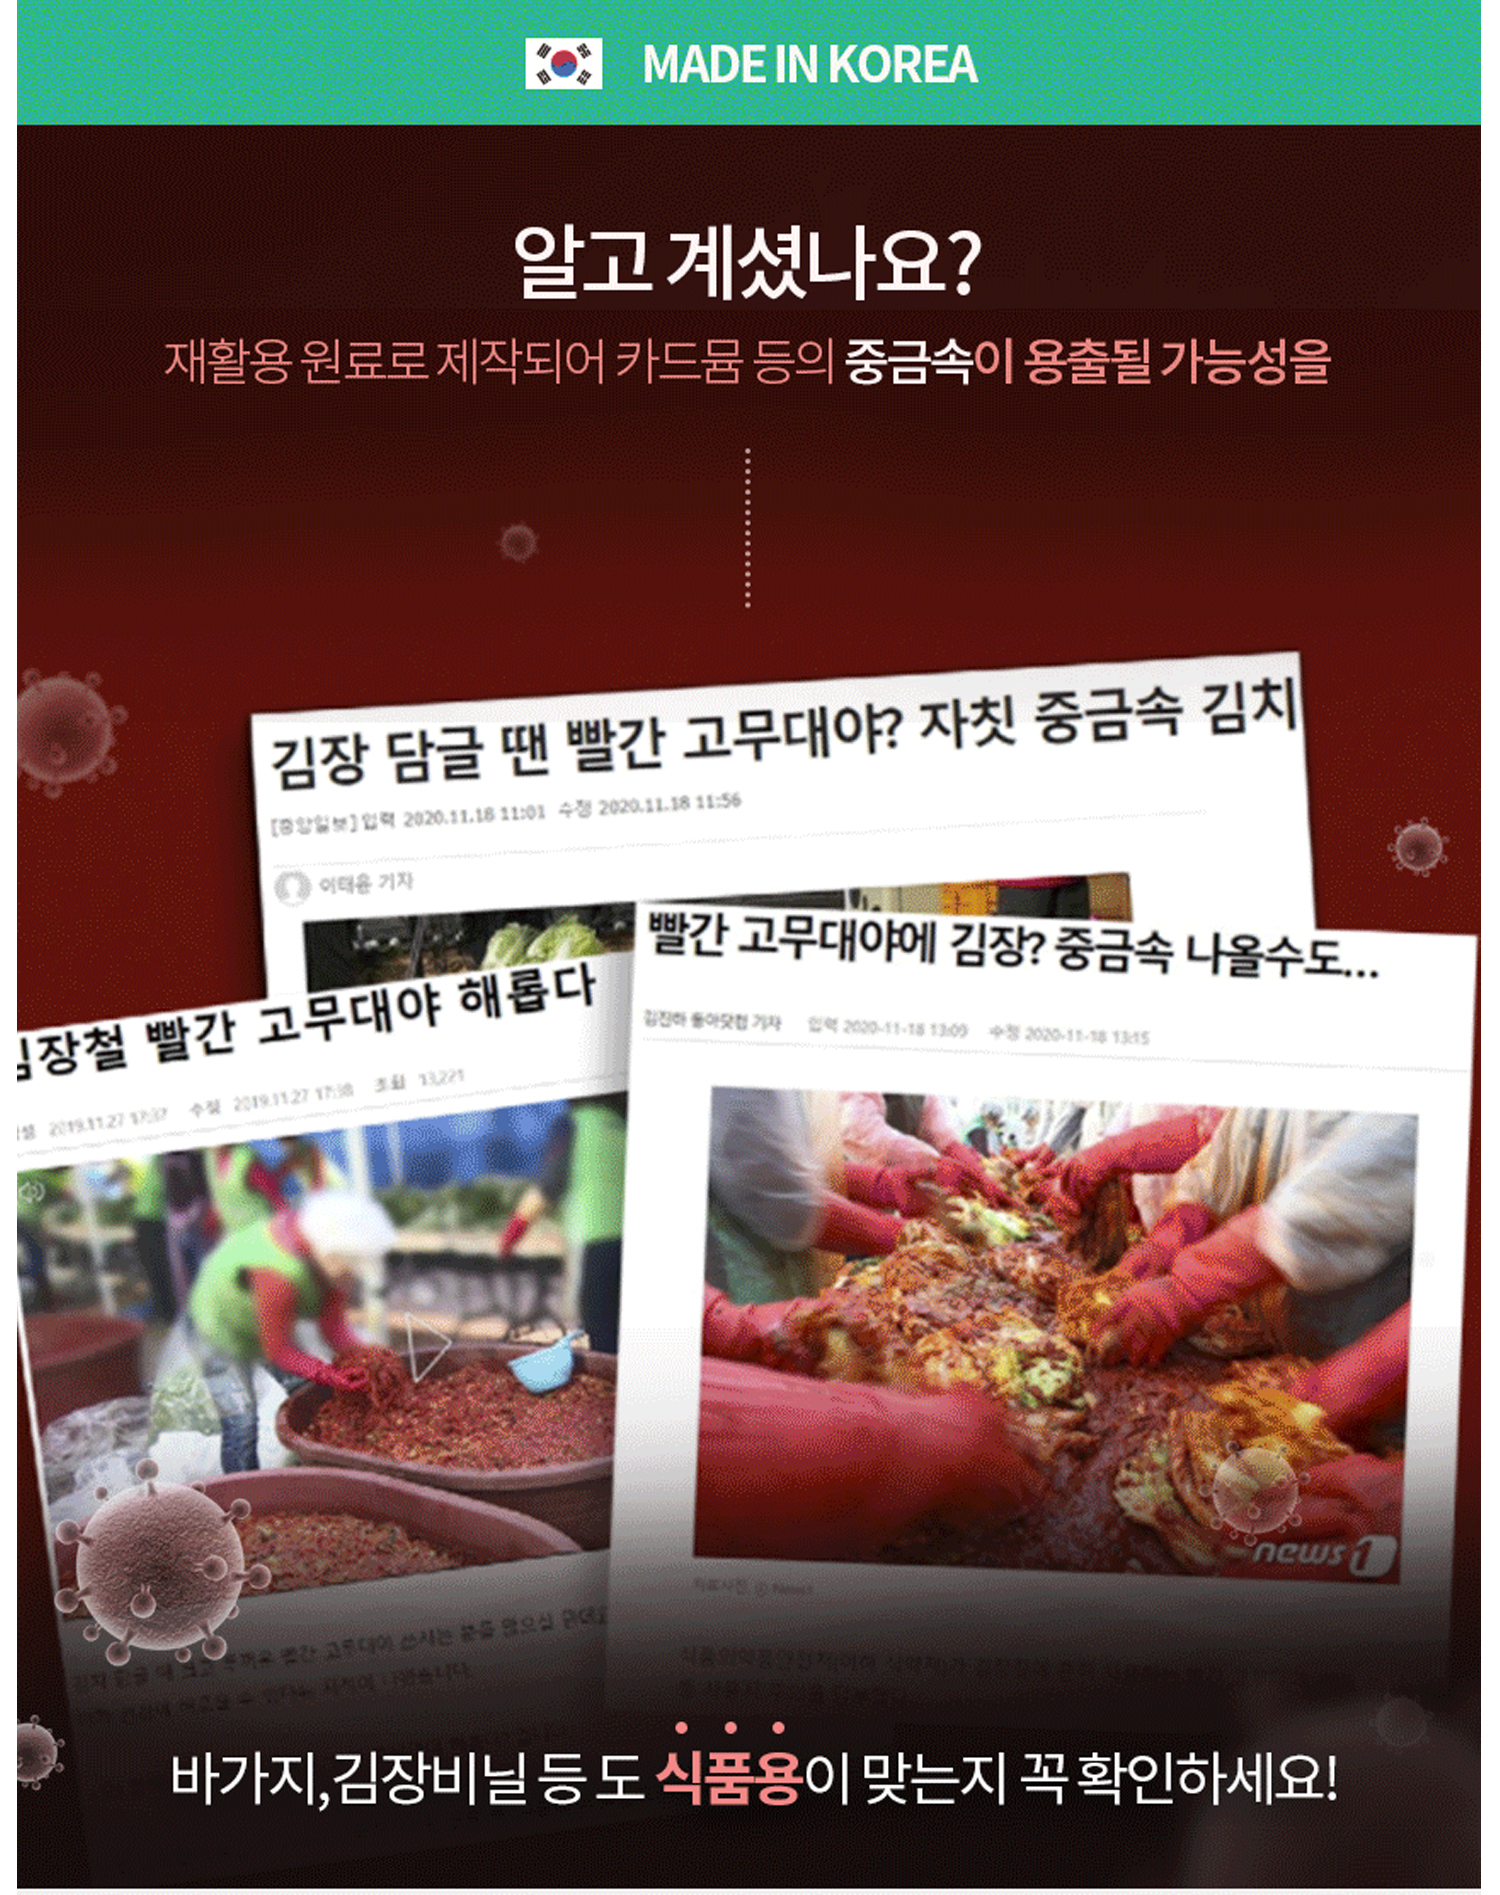 김장시 사용하는 빨간대야의 중금속 오염 위험에 대한 이미지와 글이 보인다.